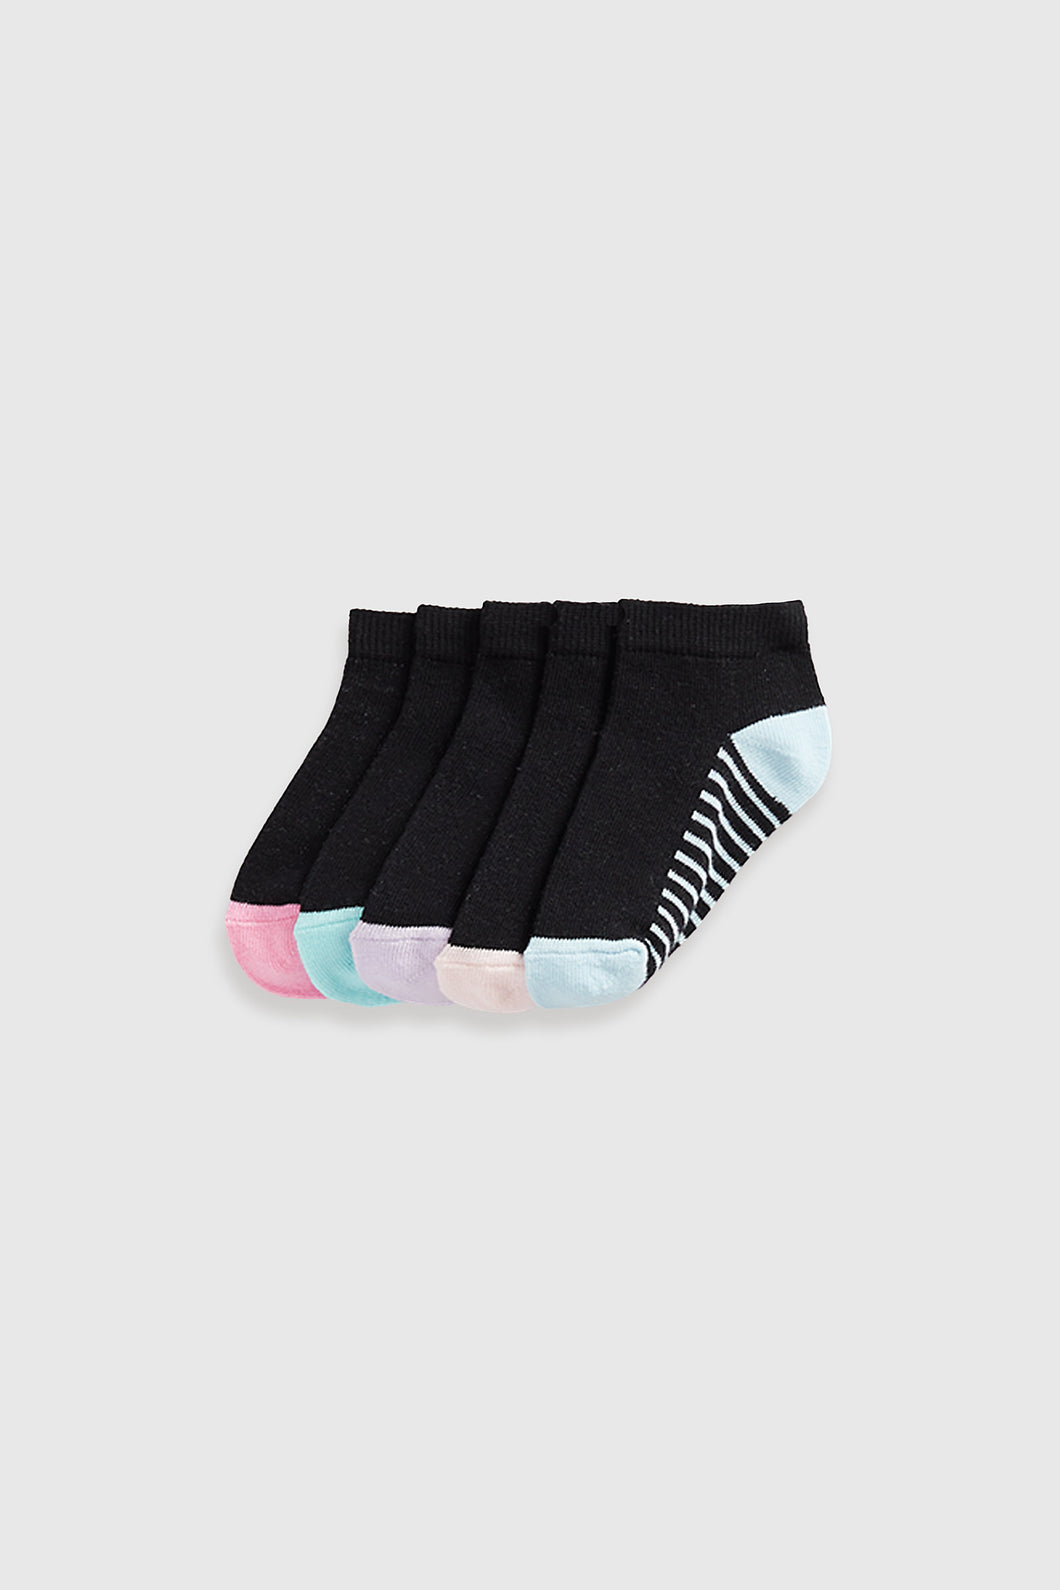 Mothercare Black Stripe Trainer Socks - 5 Pack